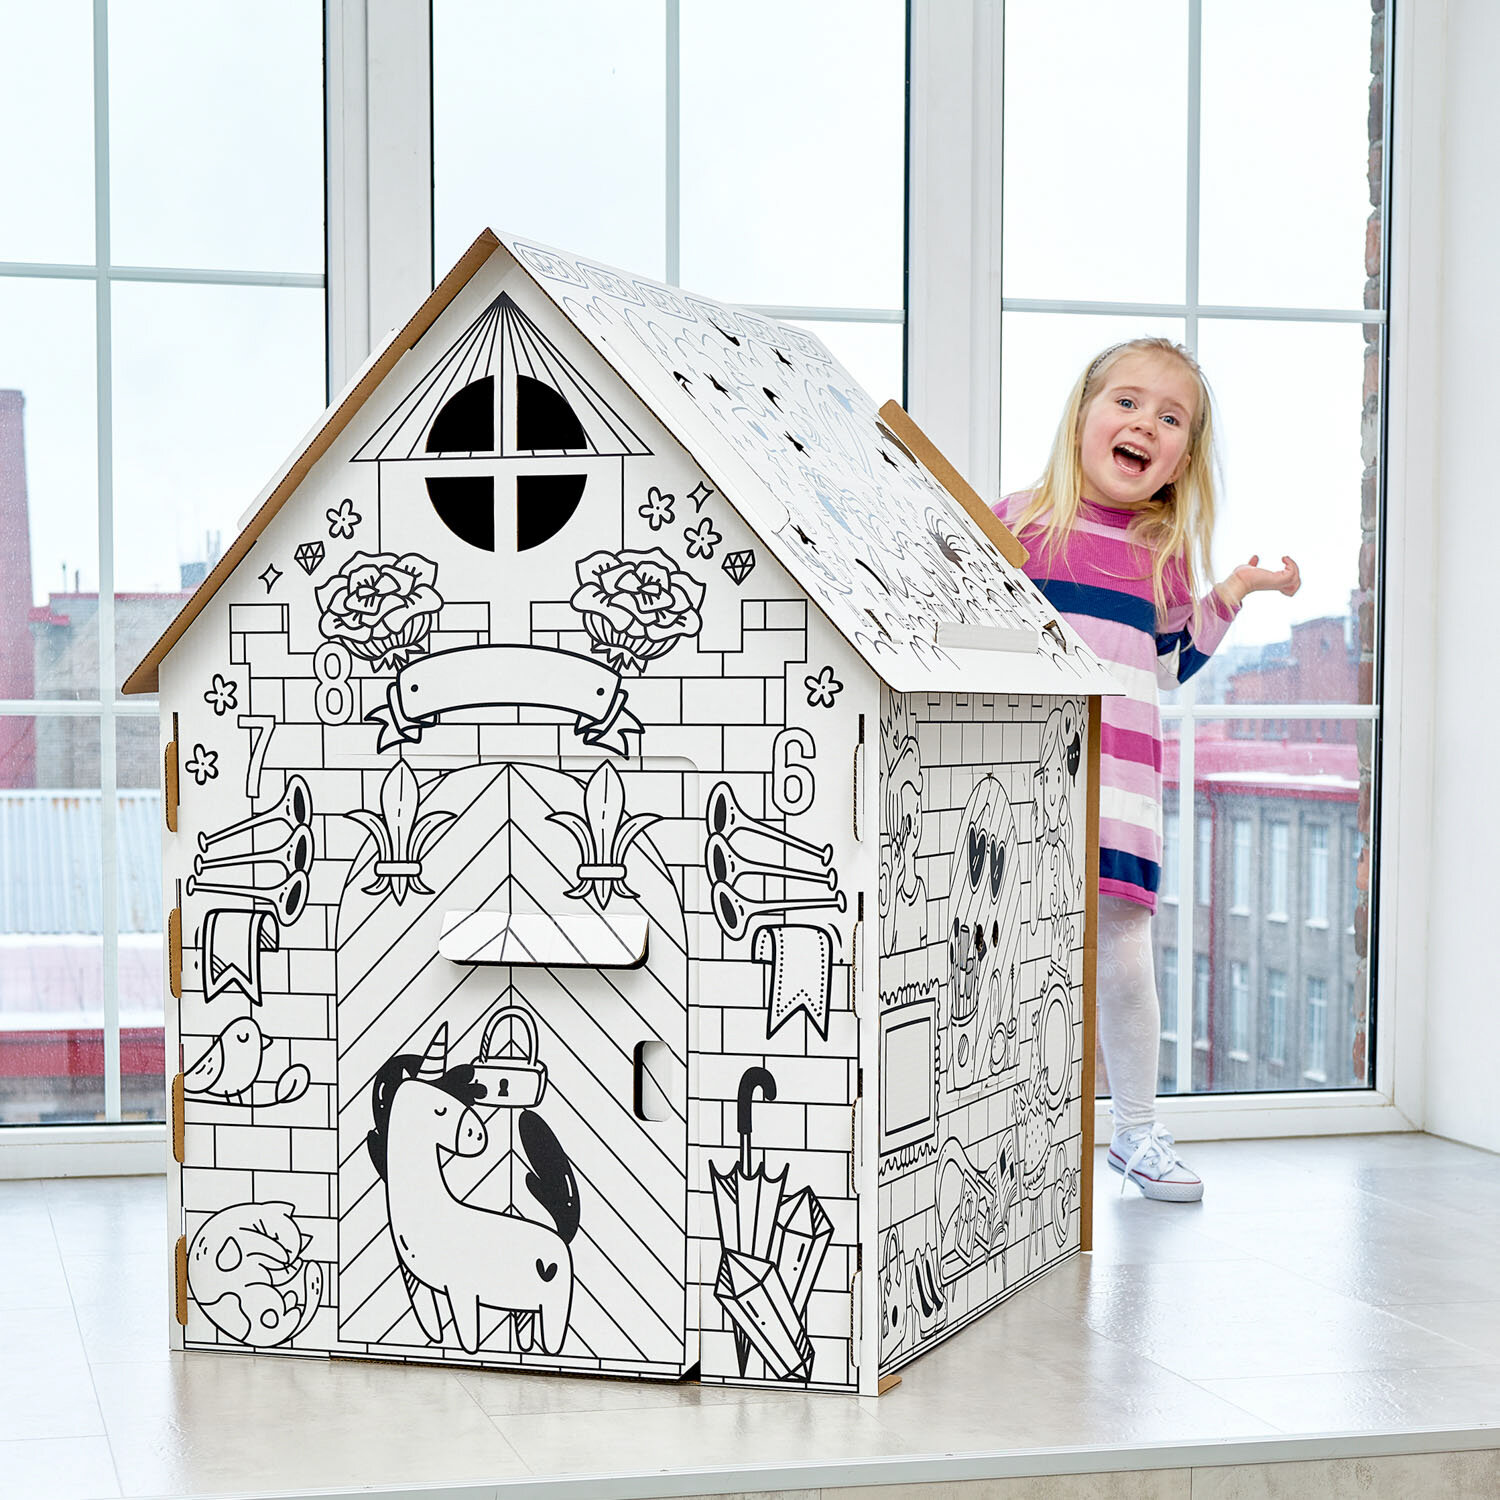 Картонный развивающий домик раскраска. Домик из картона для детей. Подарок для девочки и мальчика